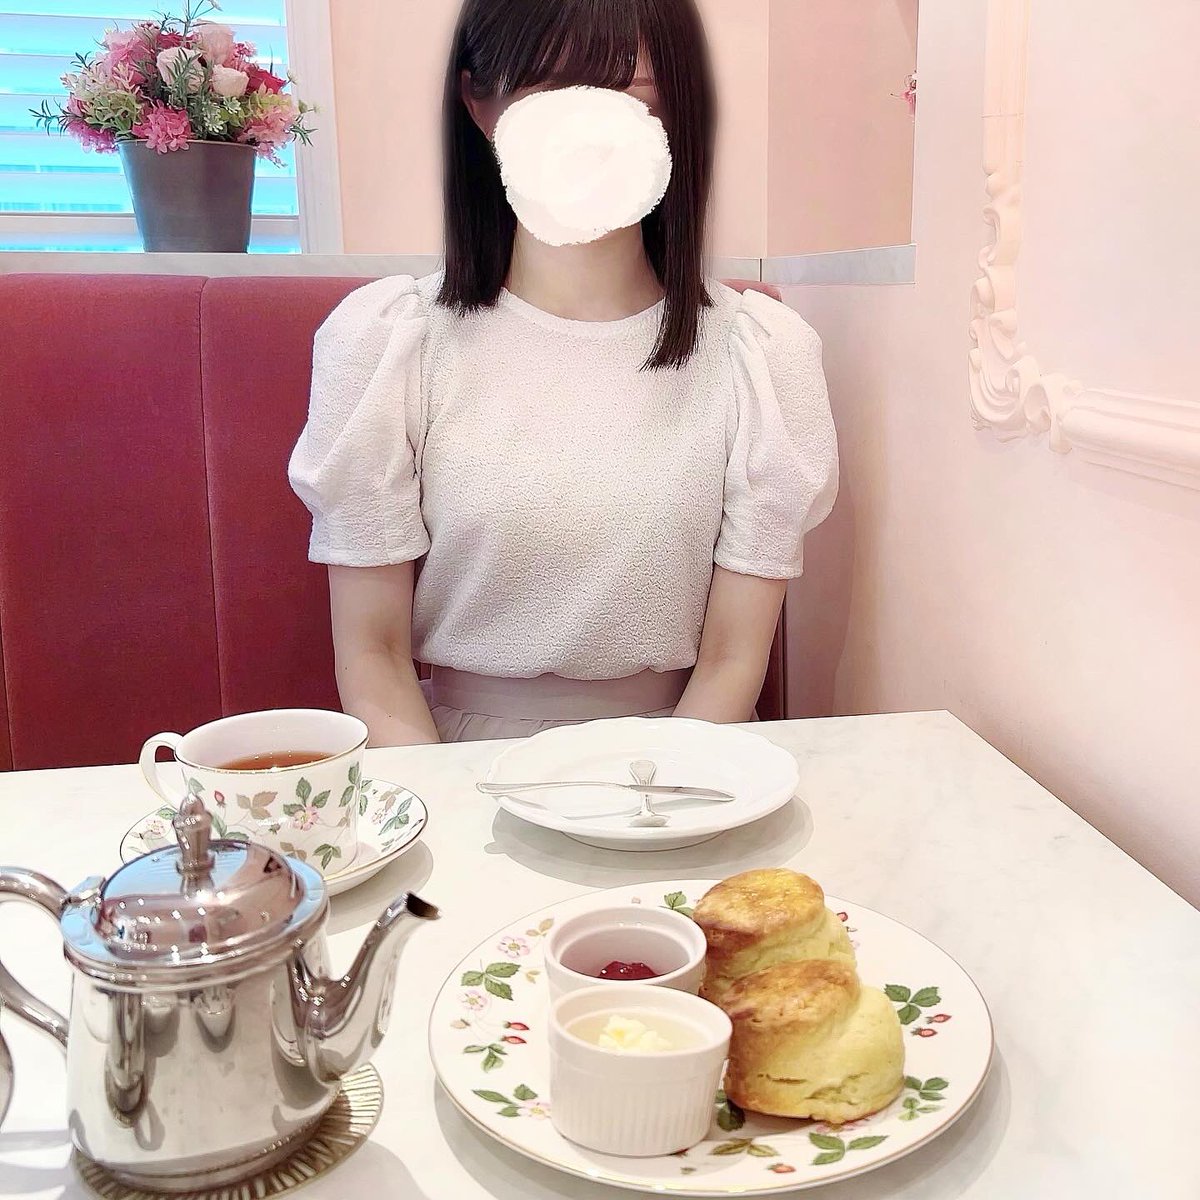 ◽︎浦和
tea room KANKO

スコパの帰りに寄りました🫖
ワイルドストロベリーの壁紙と食器が可愛いピンクの空間が素敵でした🍓

#茶好連
#kasumiのお茶会